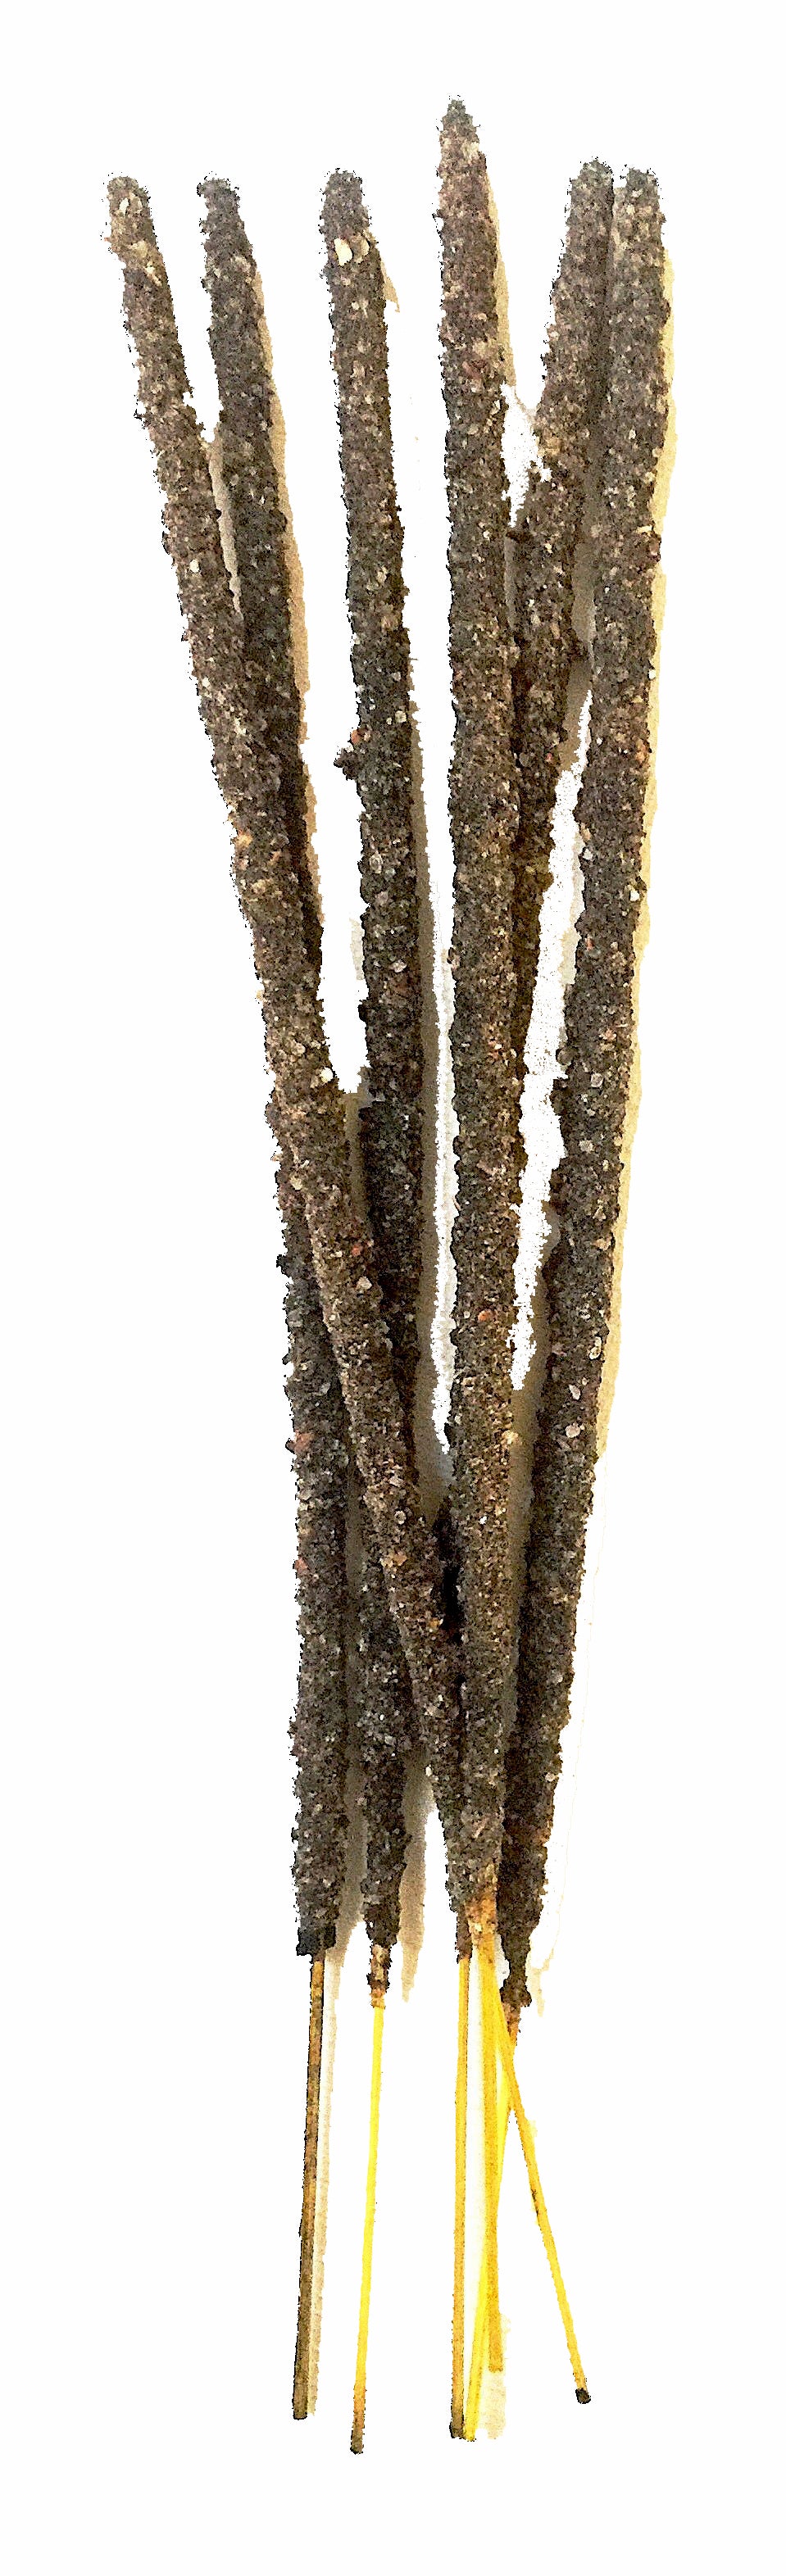 PK/6 - Artisan Incense Sticks - Frankincense Resin - Sacred Smoke